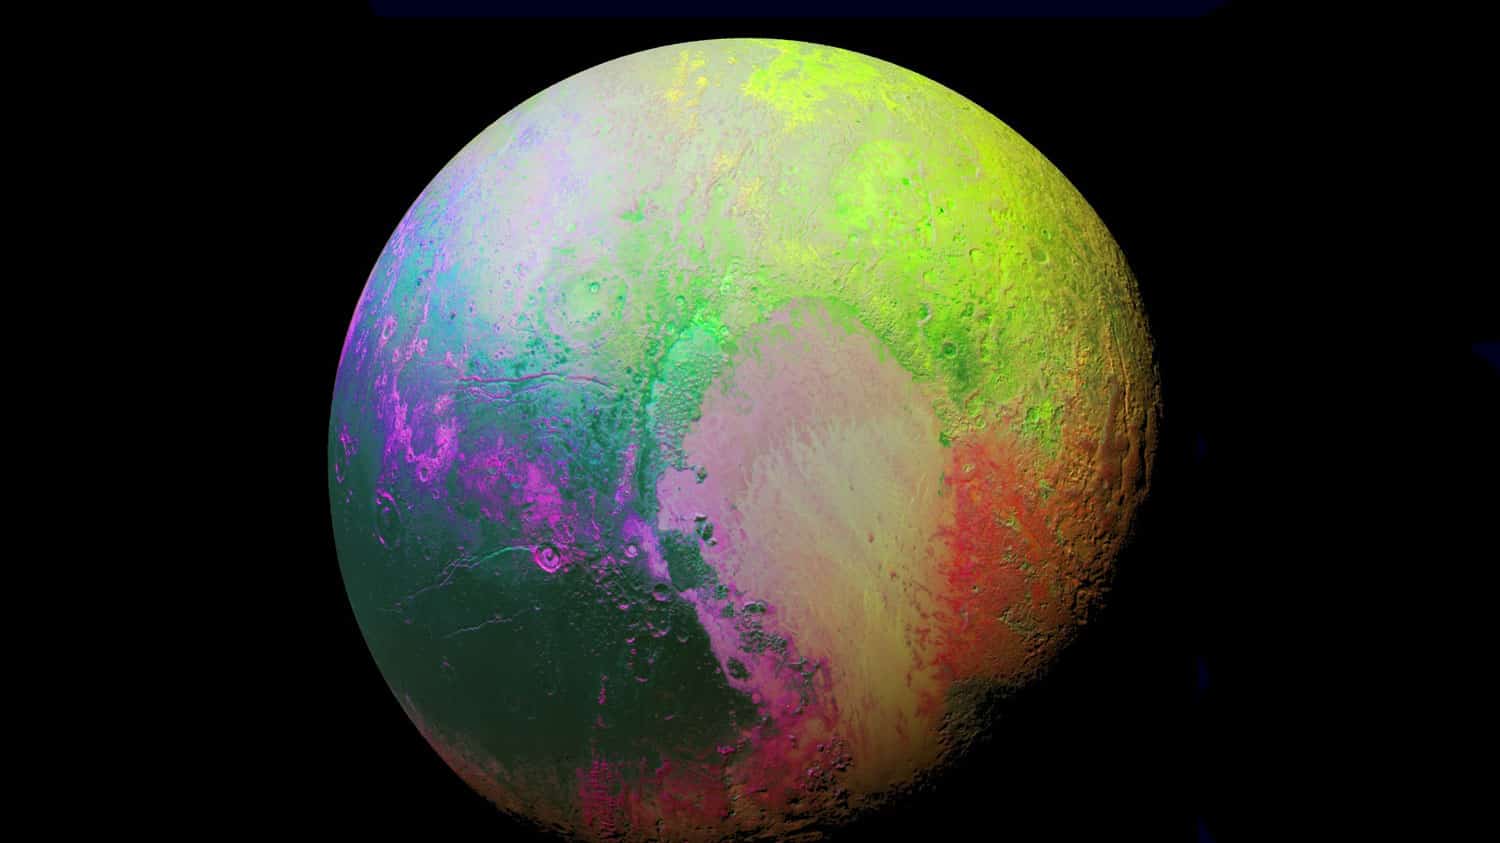 NASA compartilha imagem colorida traduzida de Plutão